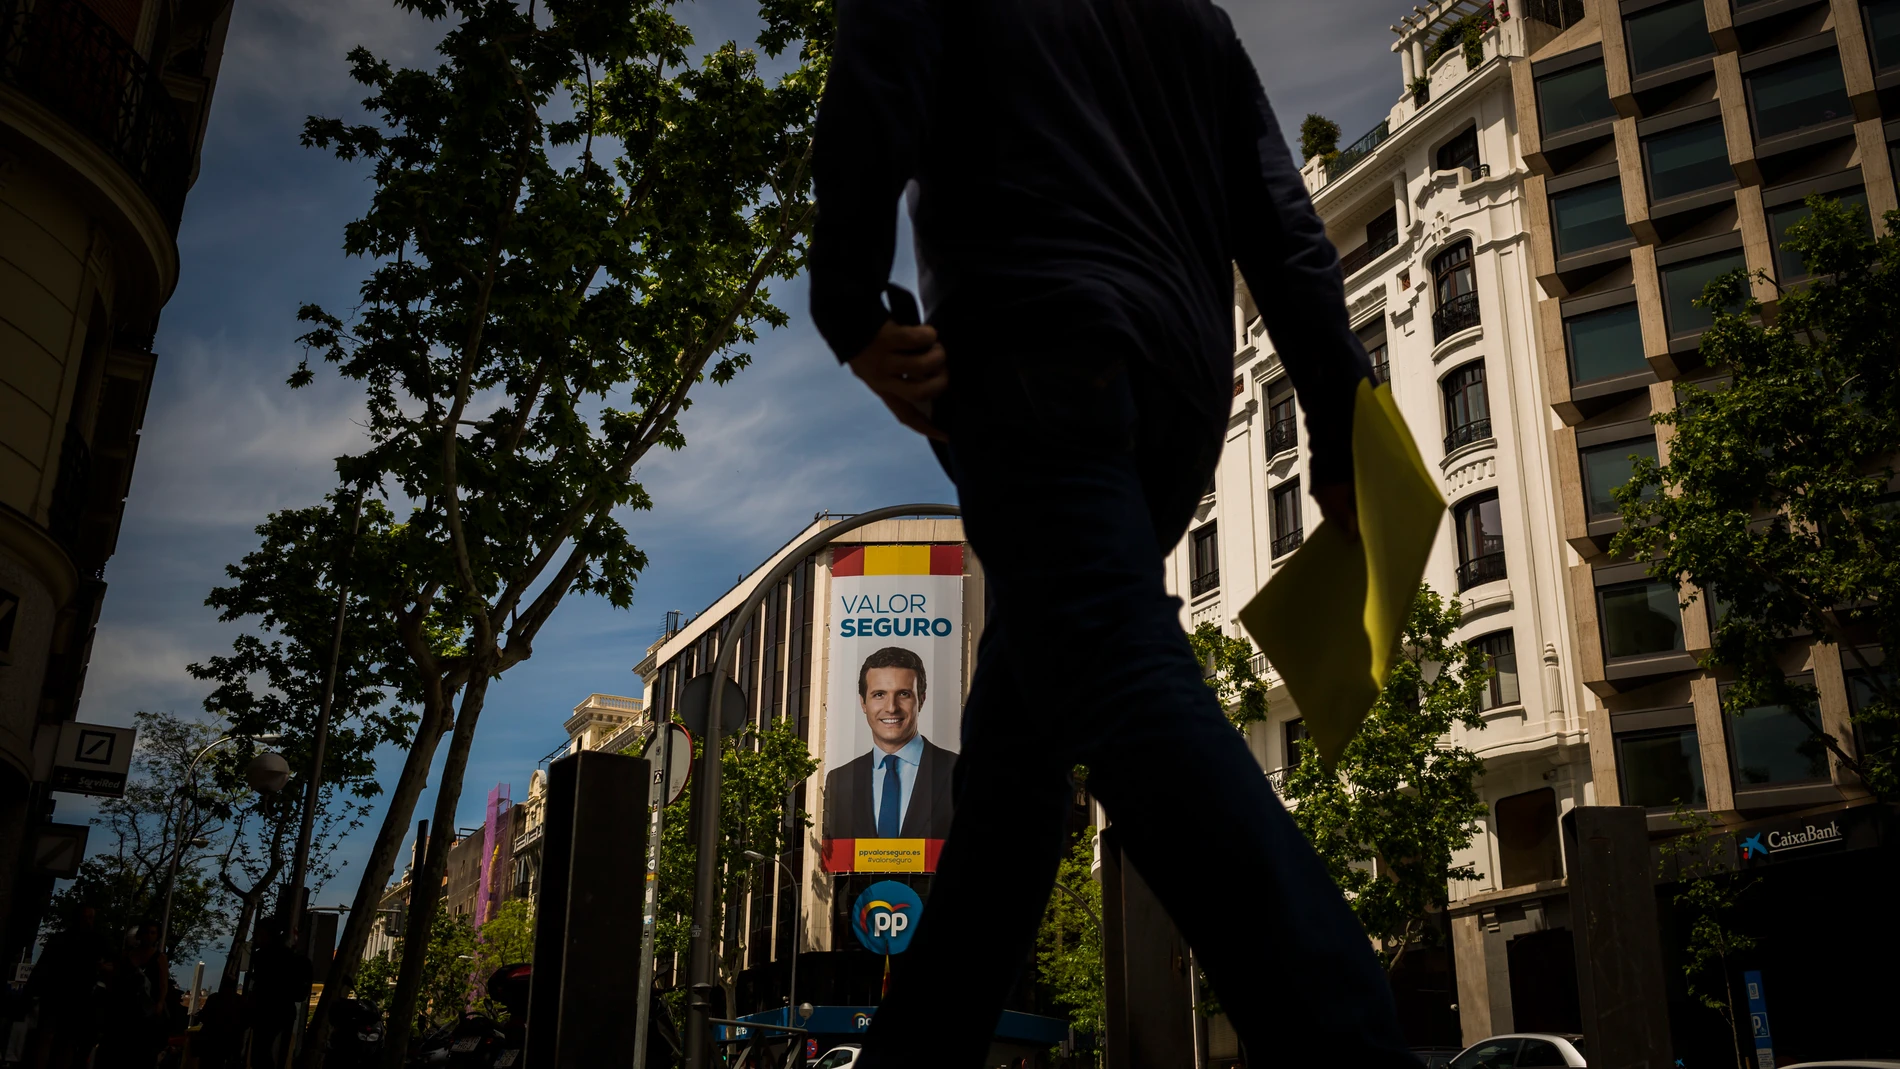 La sede nacional del Partido Popular, en la madrileña calle de Génova, durante la última campaña electoral. De la fachada cuelga una imagen del presidente nacional del PP, Pablo Casado